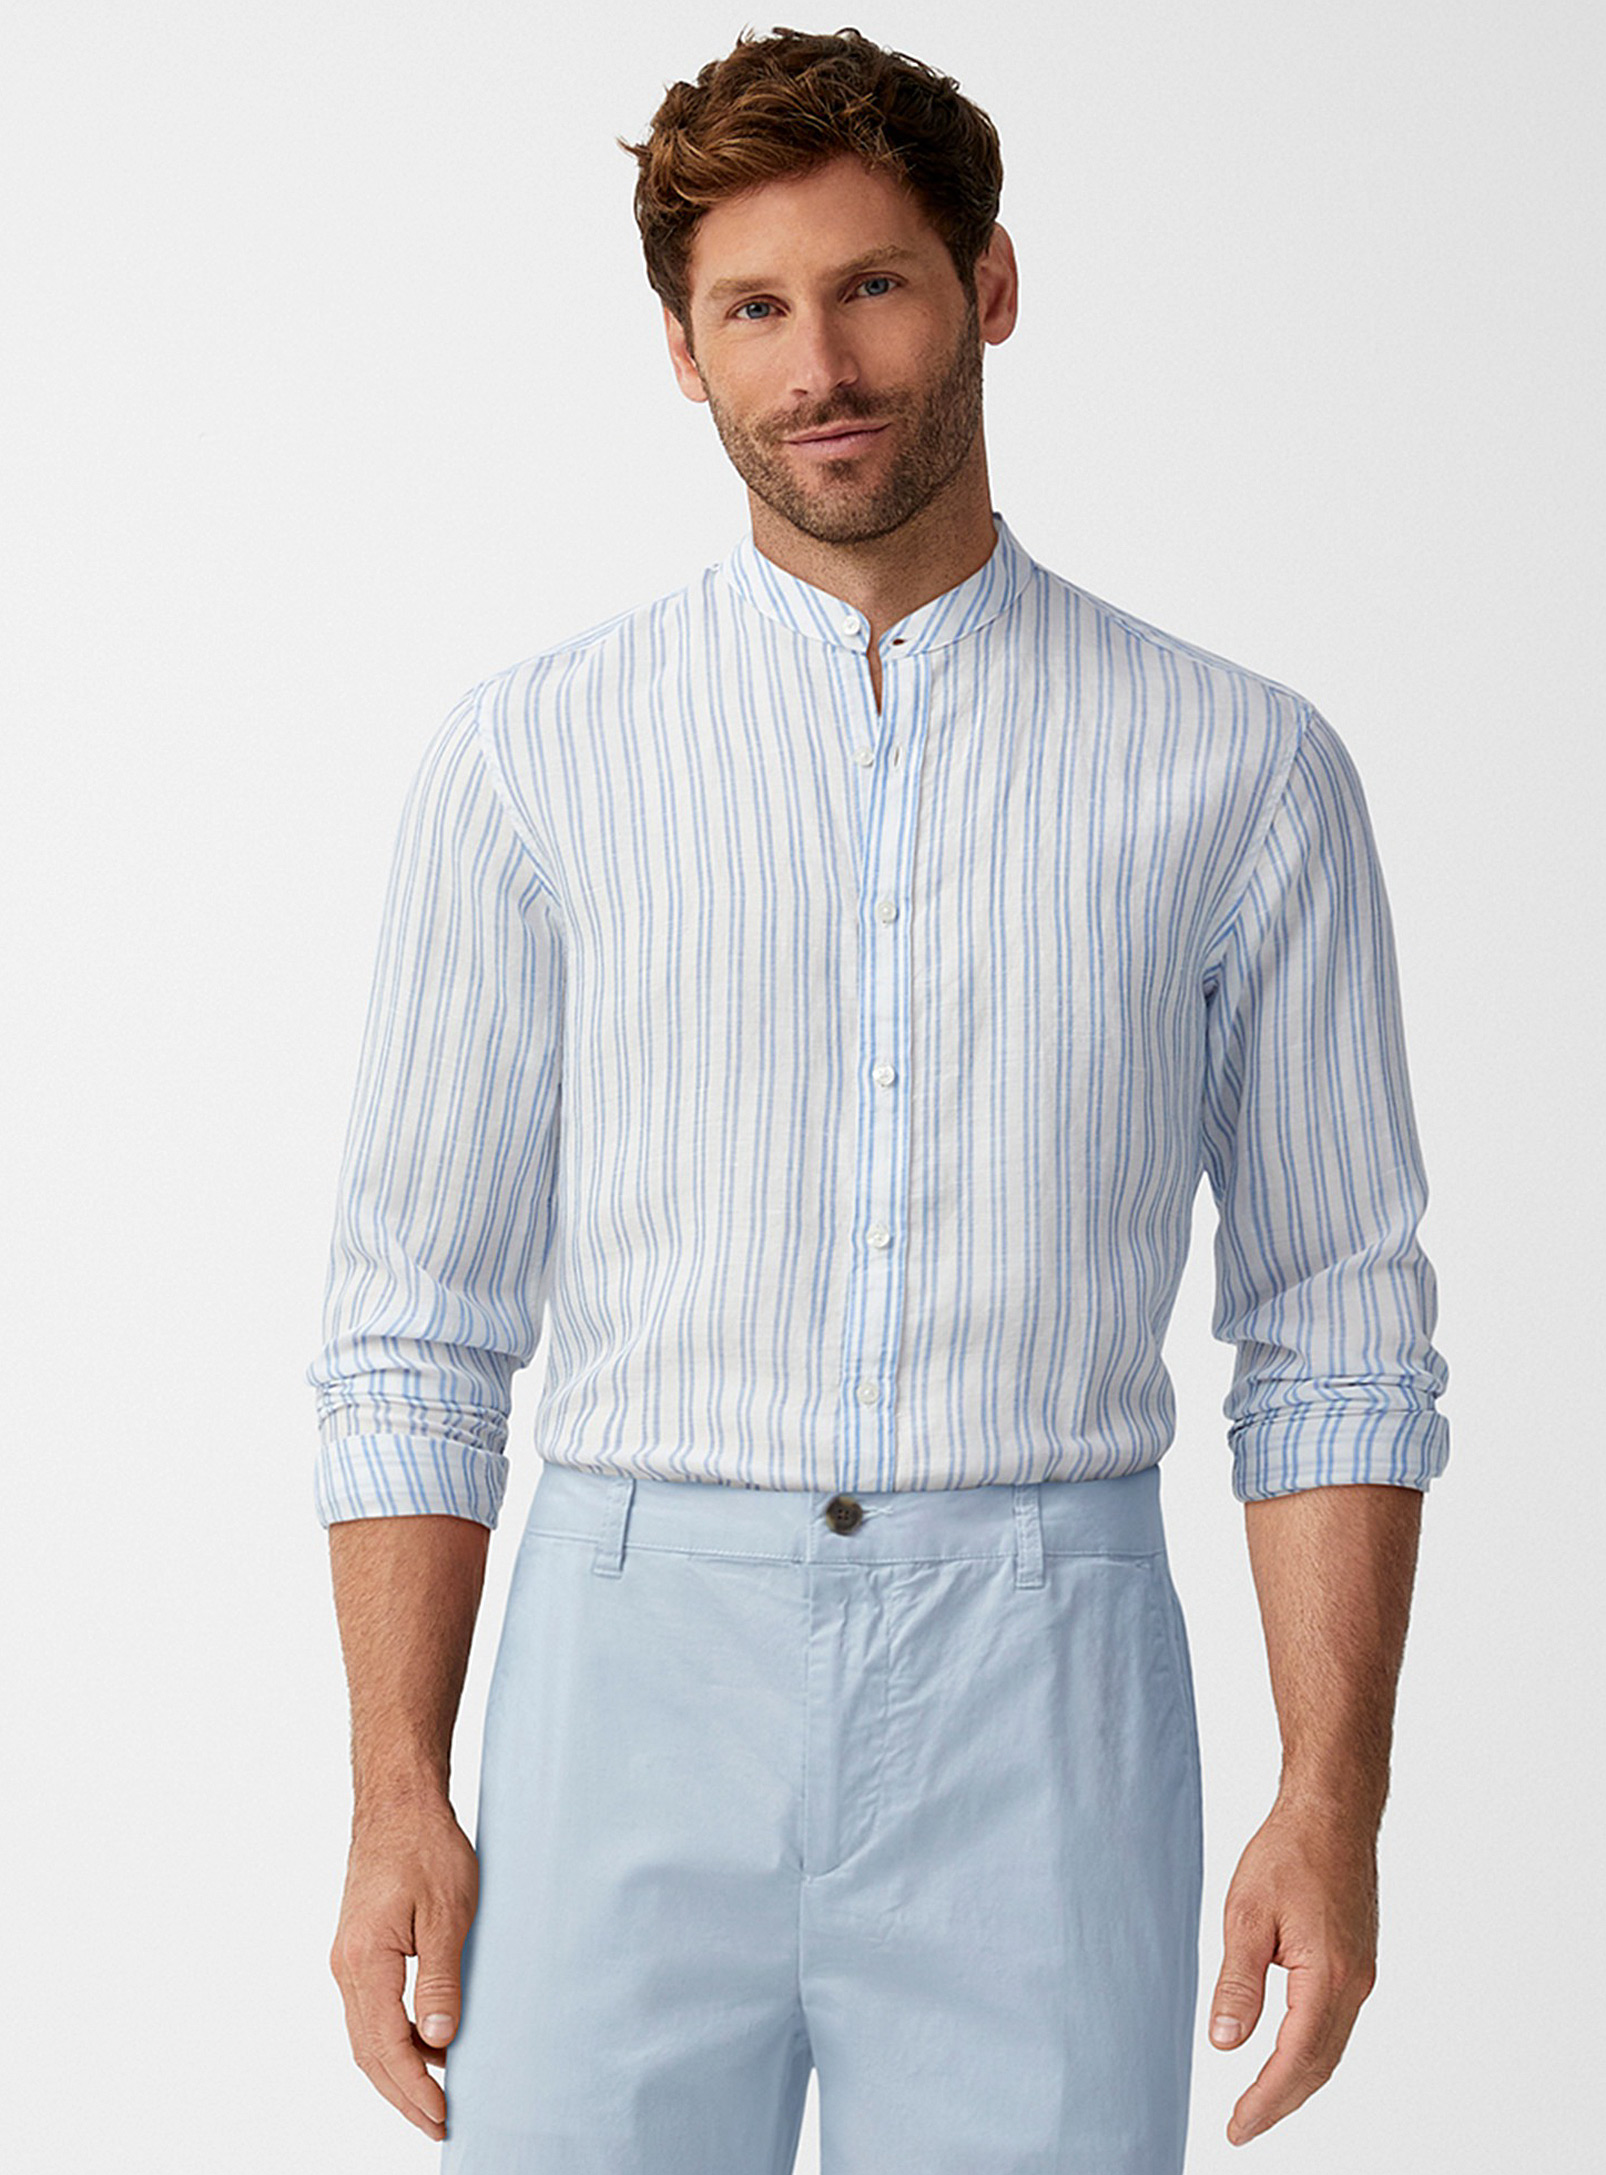 Michael Kors - Men's Striped linen officer-collar shirt